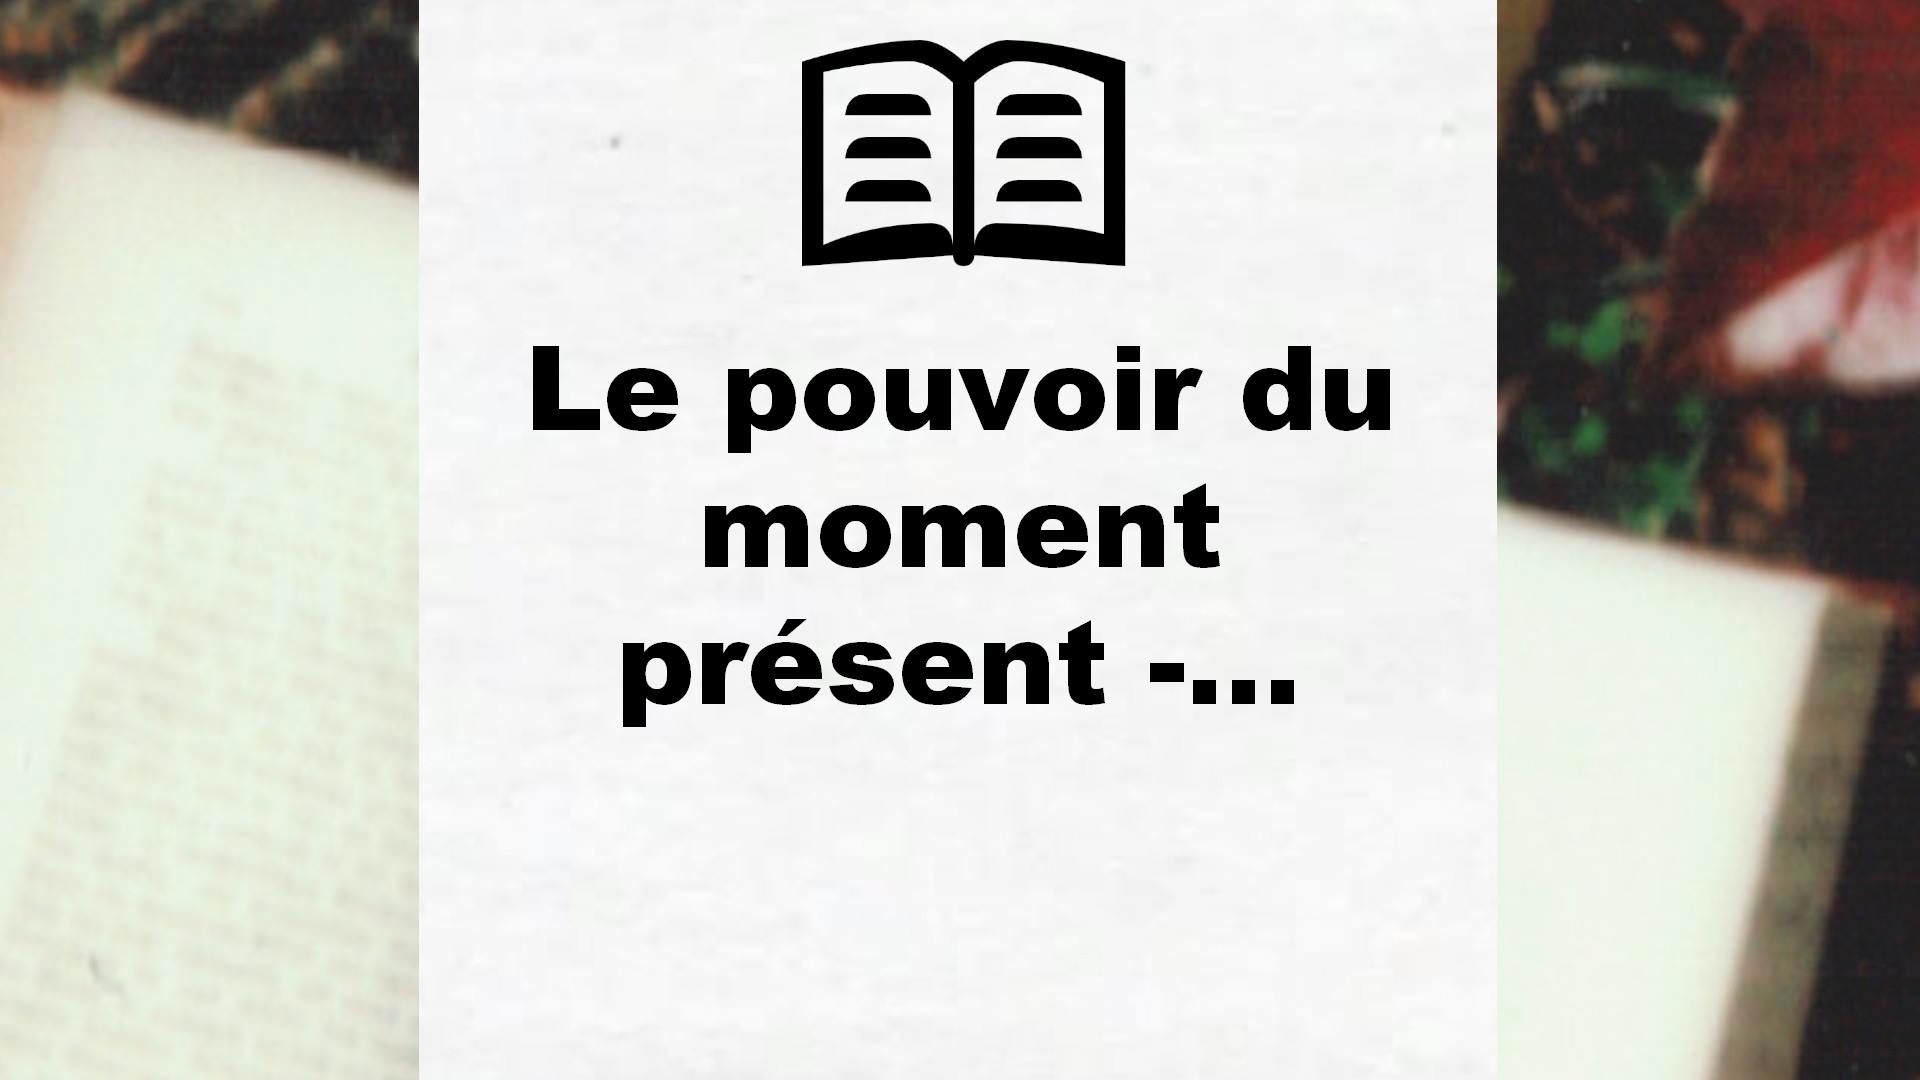 Le pouvoir du moment présent -… – Critique